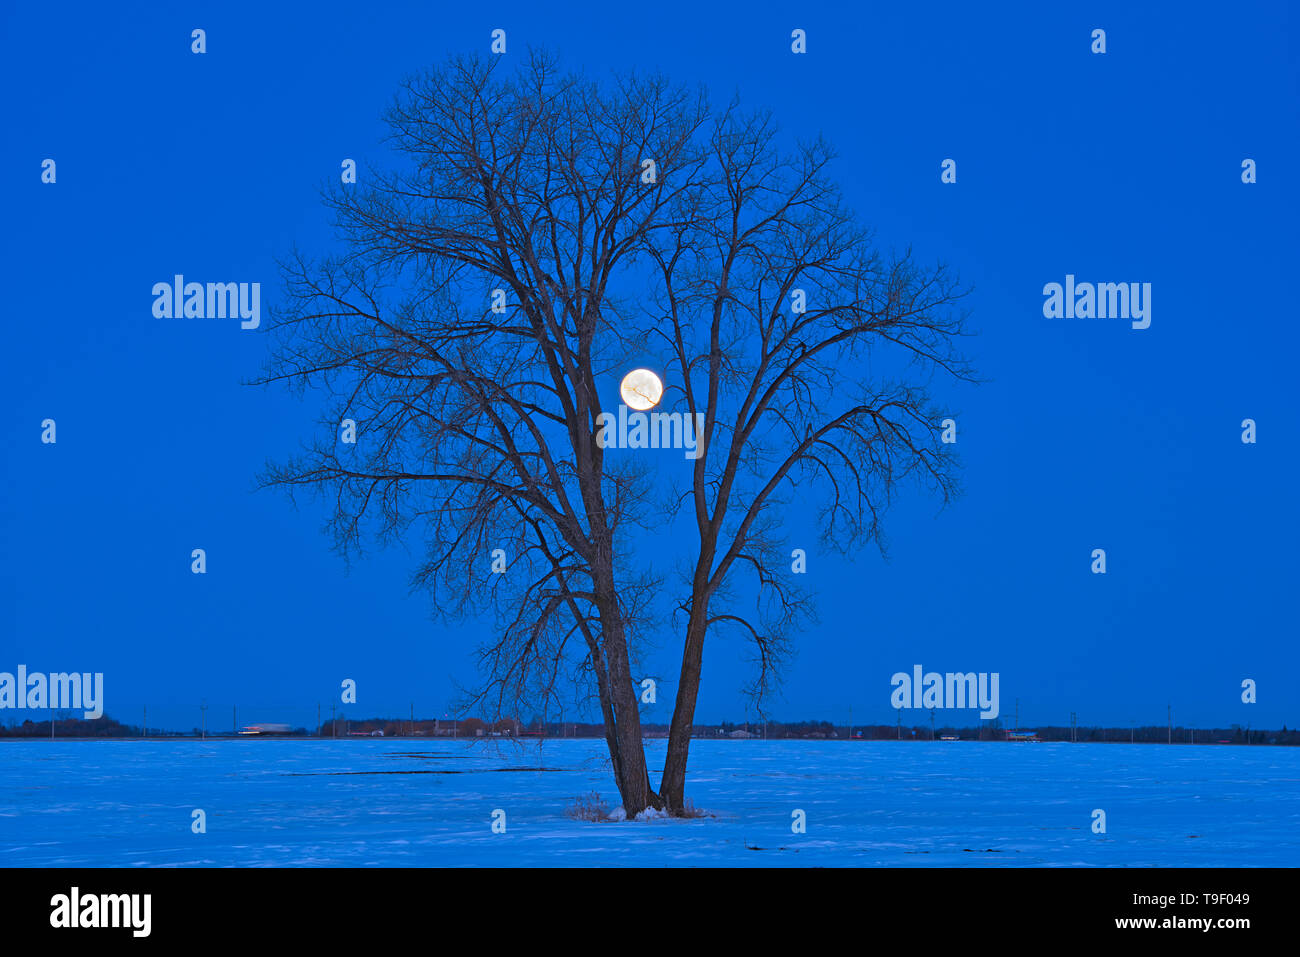 Luna piena (Super luna) e pianure pioppi neri americani (Populus deltoides) all'alba. Marzo 20, 2019. Equinozio di primavera marzo equinozio o equinozio di primavera. Primo giorno di primavera. L'ultima luna piena dell'inverno è chiamato il worm "Luna". Dugald Manitoba Canada Foto Stock